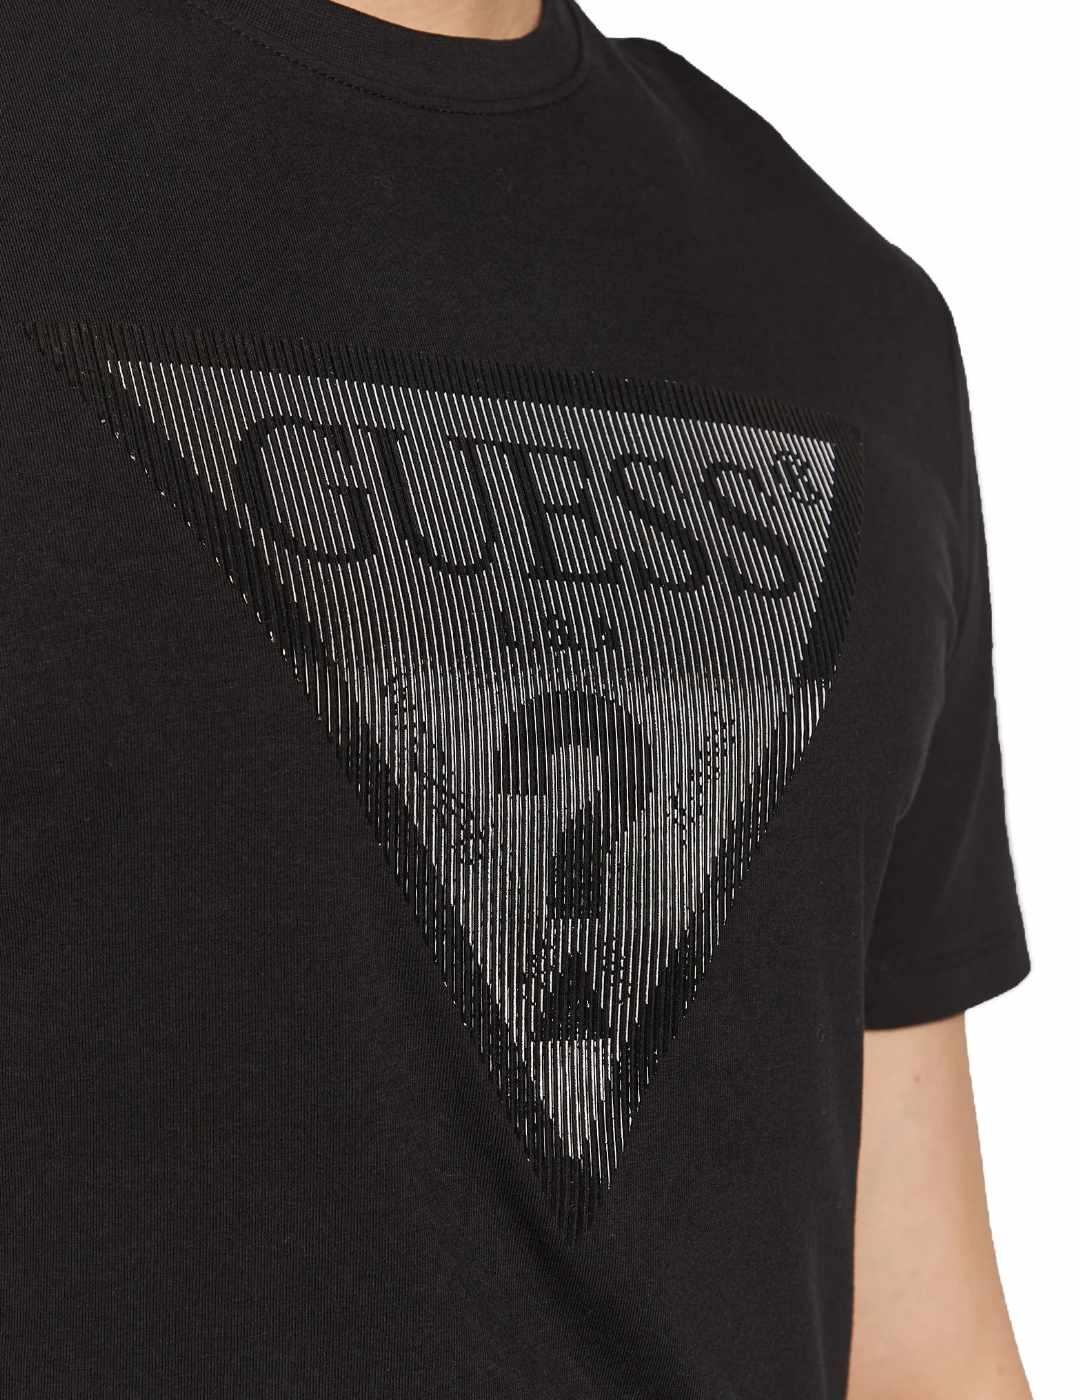 Camiseta Guess Shiny negro manga corta para hombre